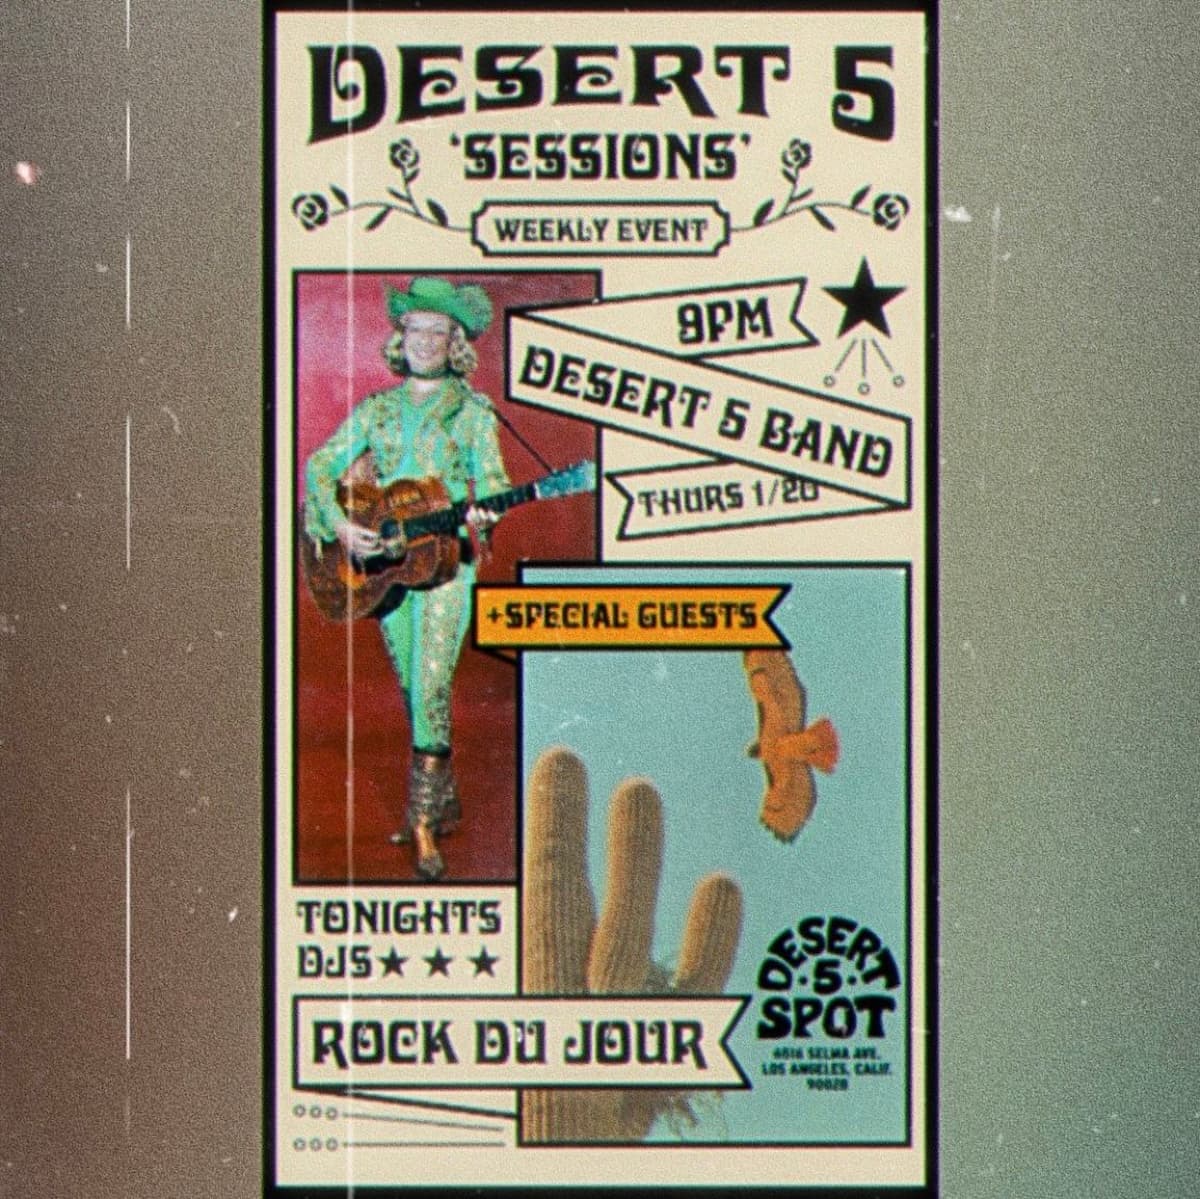 Desert 5 Sessions